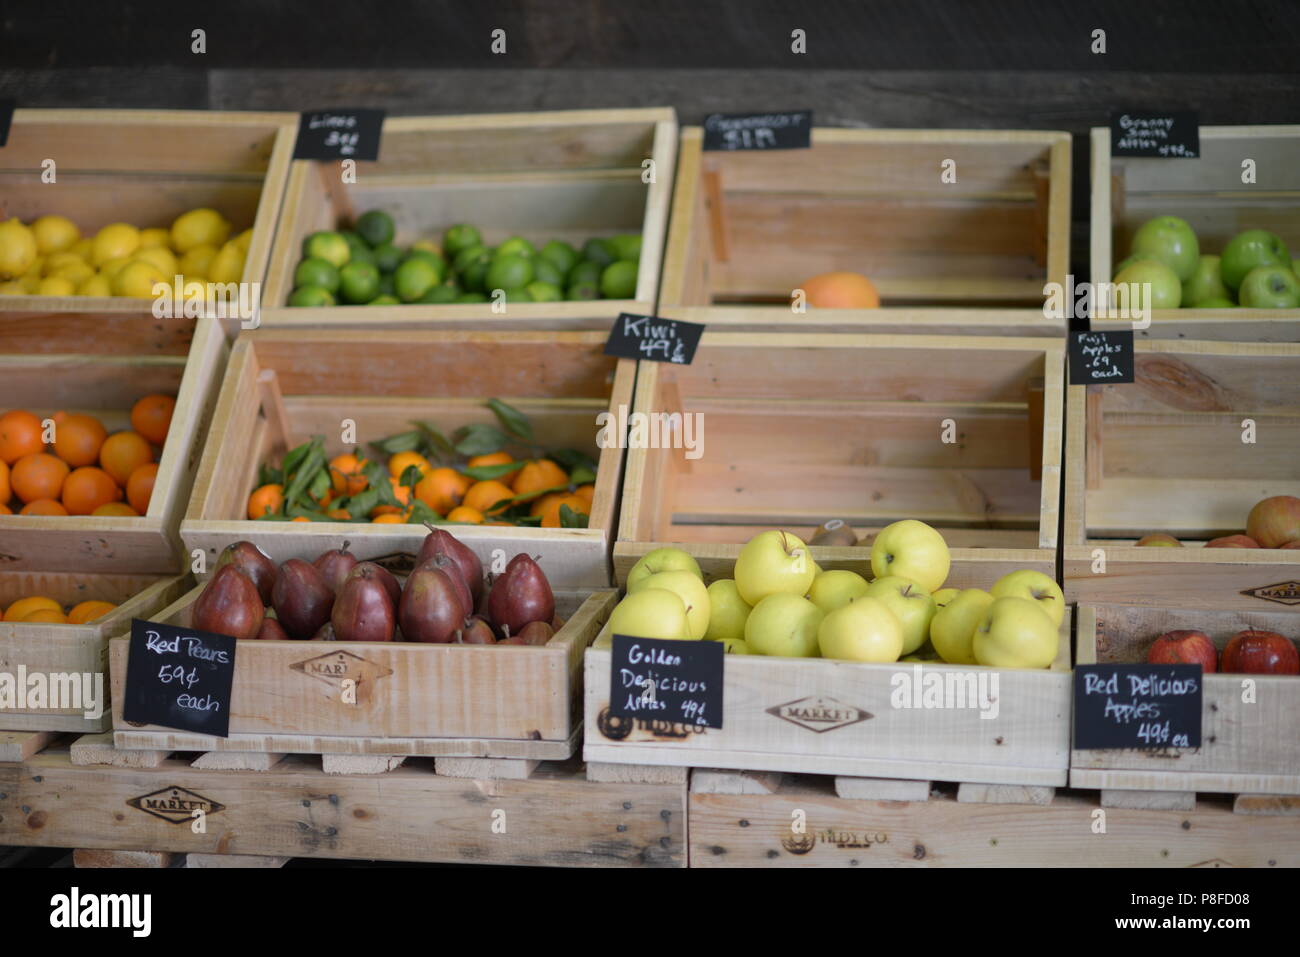 Obst- und Gemüsemarkt, Bio-Gemüse, Bio-obst, gesunde Ernährung, gesunde Lebensweise Stockfoto